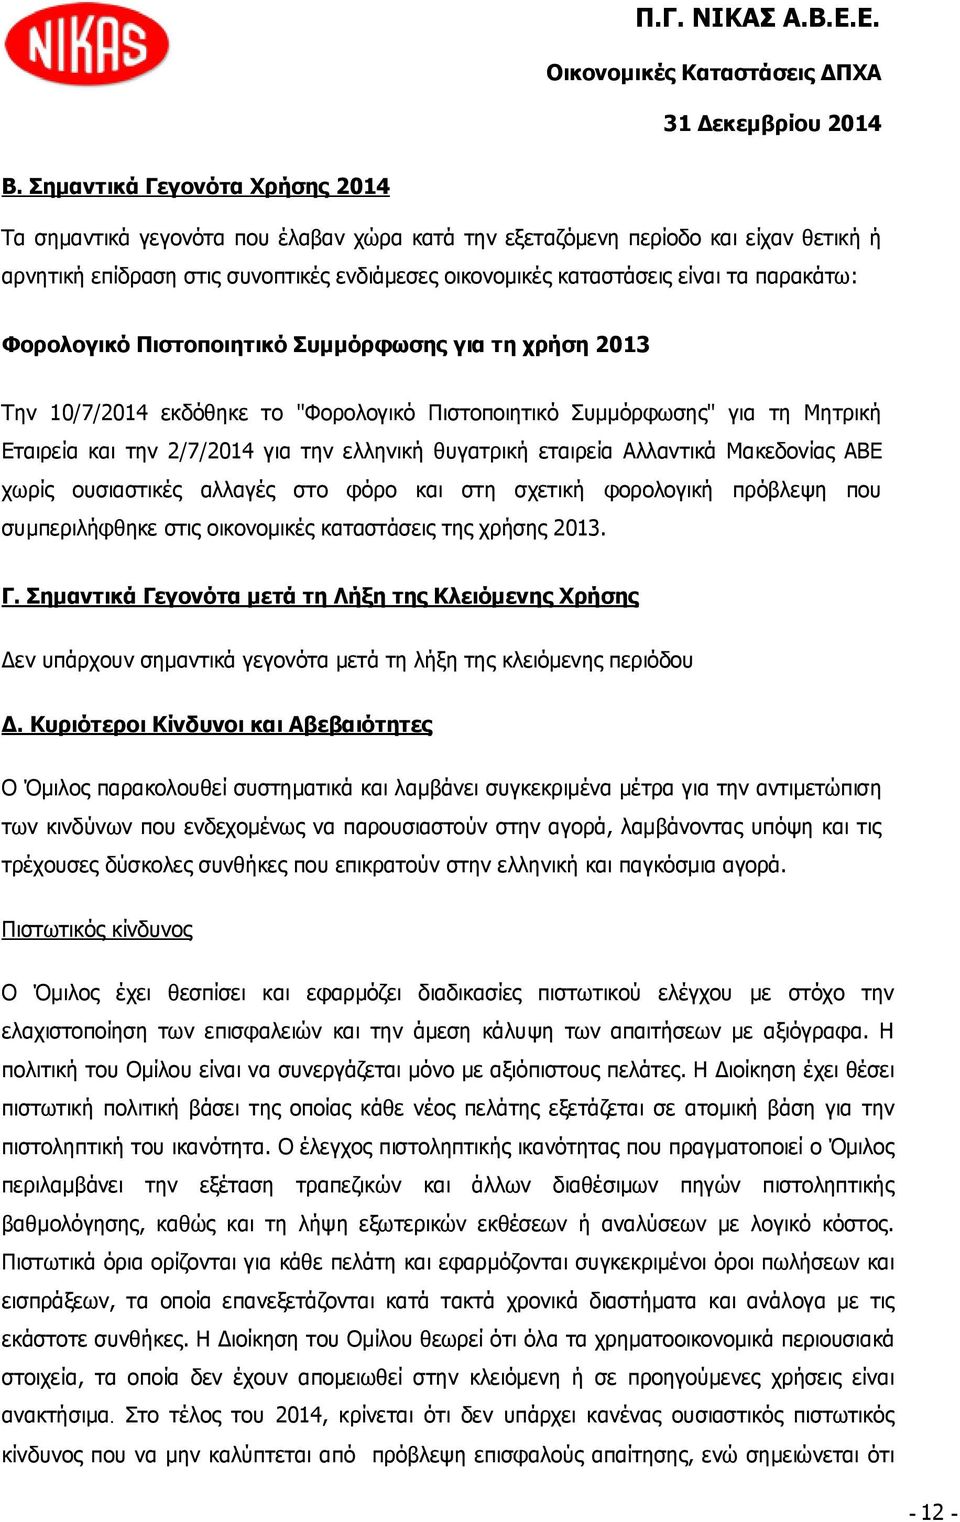 εταιρεία Αλλαντικά Μακεδονίας ΑΒΕ χωρίς ουσιαστικές αλλαγές στο φόρο και στη σχετική φορολογική πρόβλεψη που συμπεριλήφθηκε στις οικονομικές καταστάσεις της χρήσης 2013. Γ.